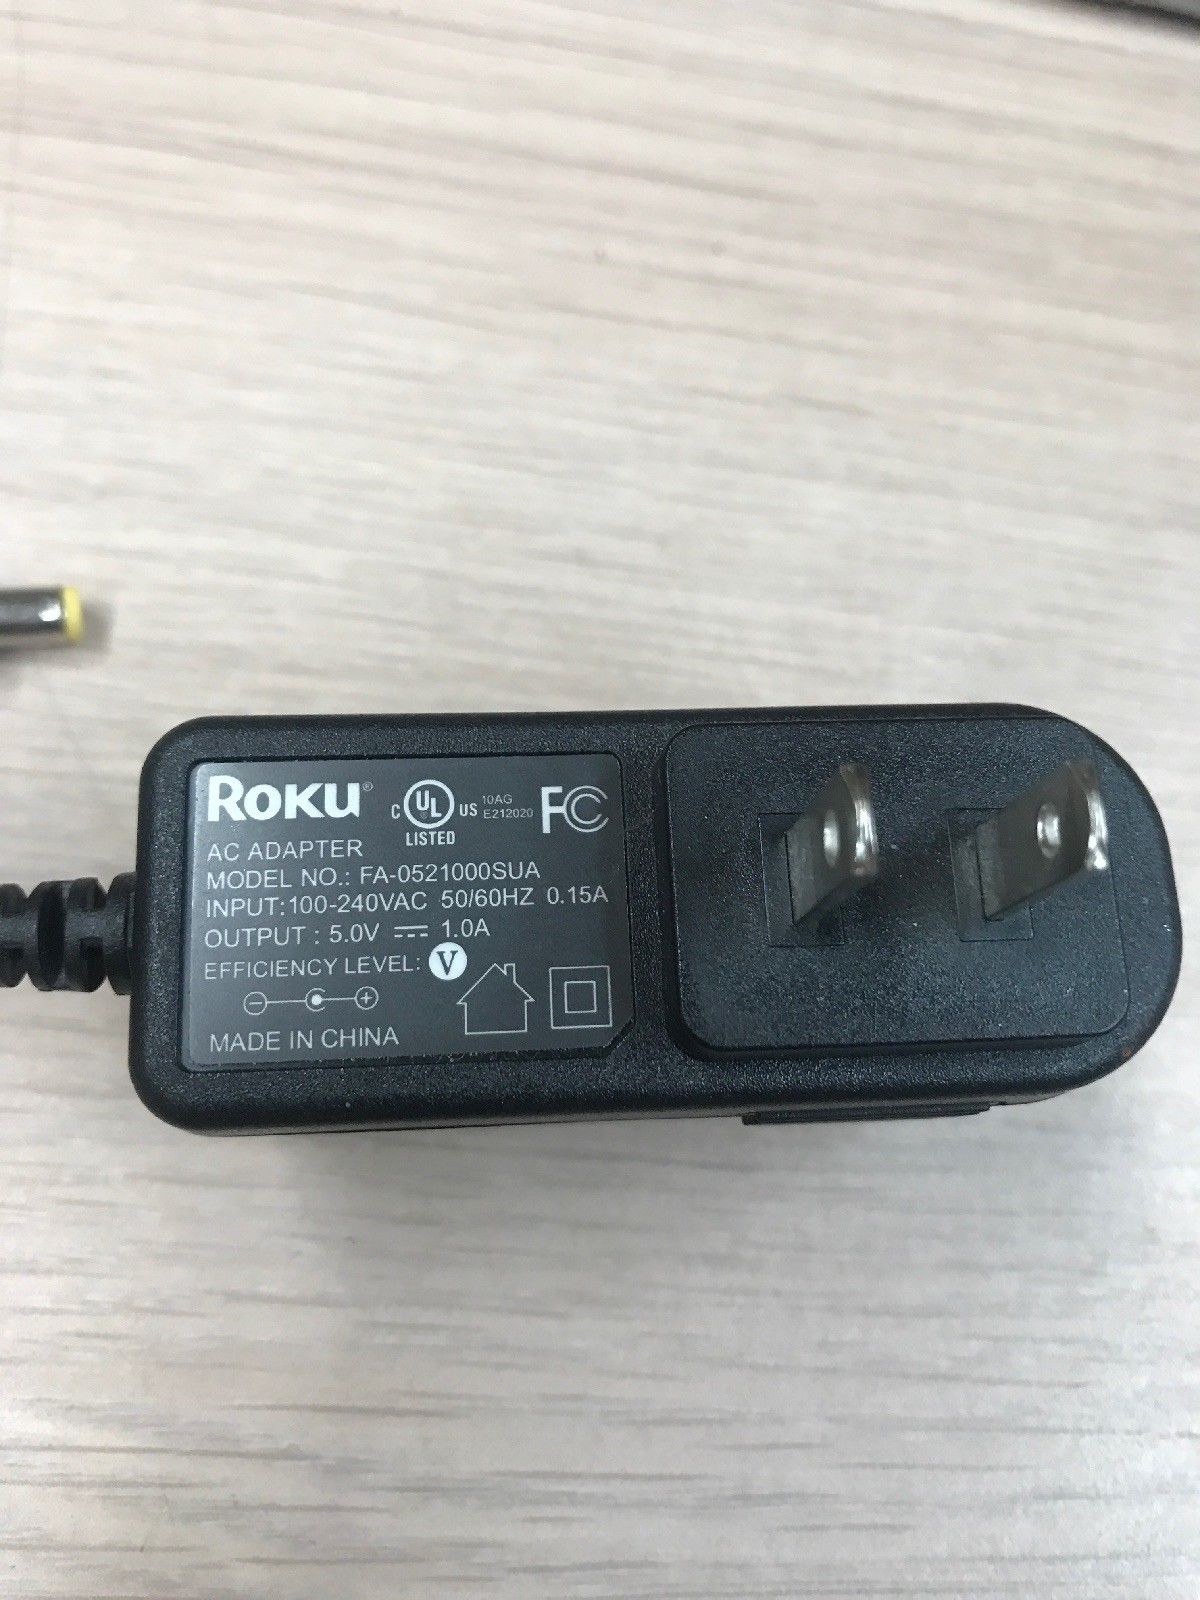 *Brand NEW* 5V 1.0A AC Adapter ROKU FA-0521000SUA Power Supply